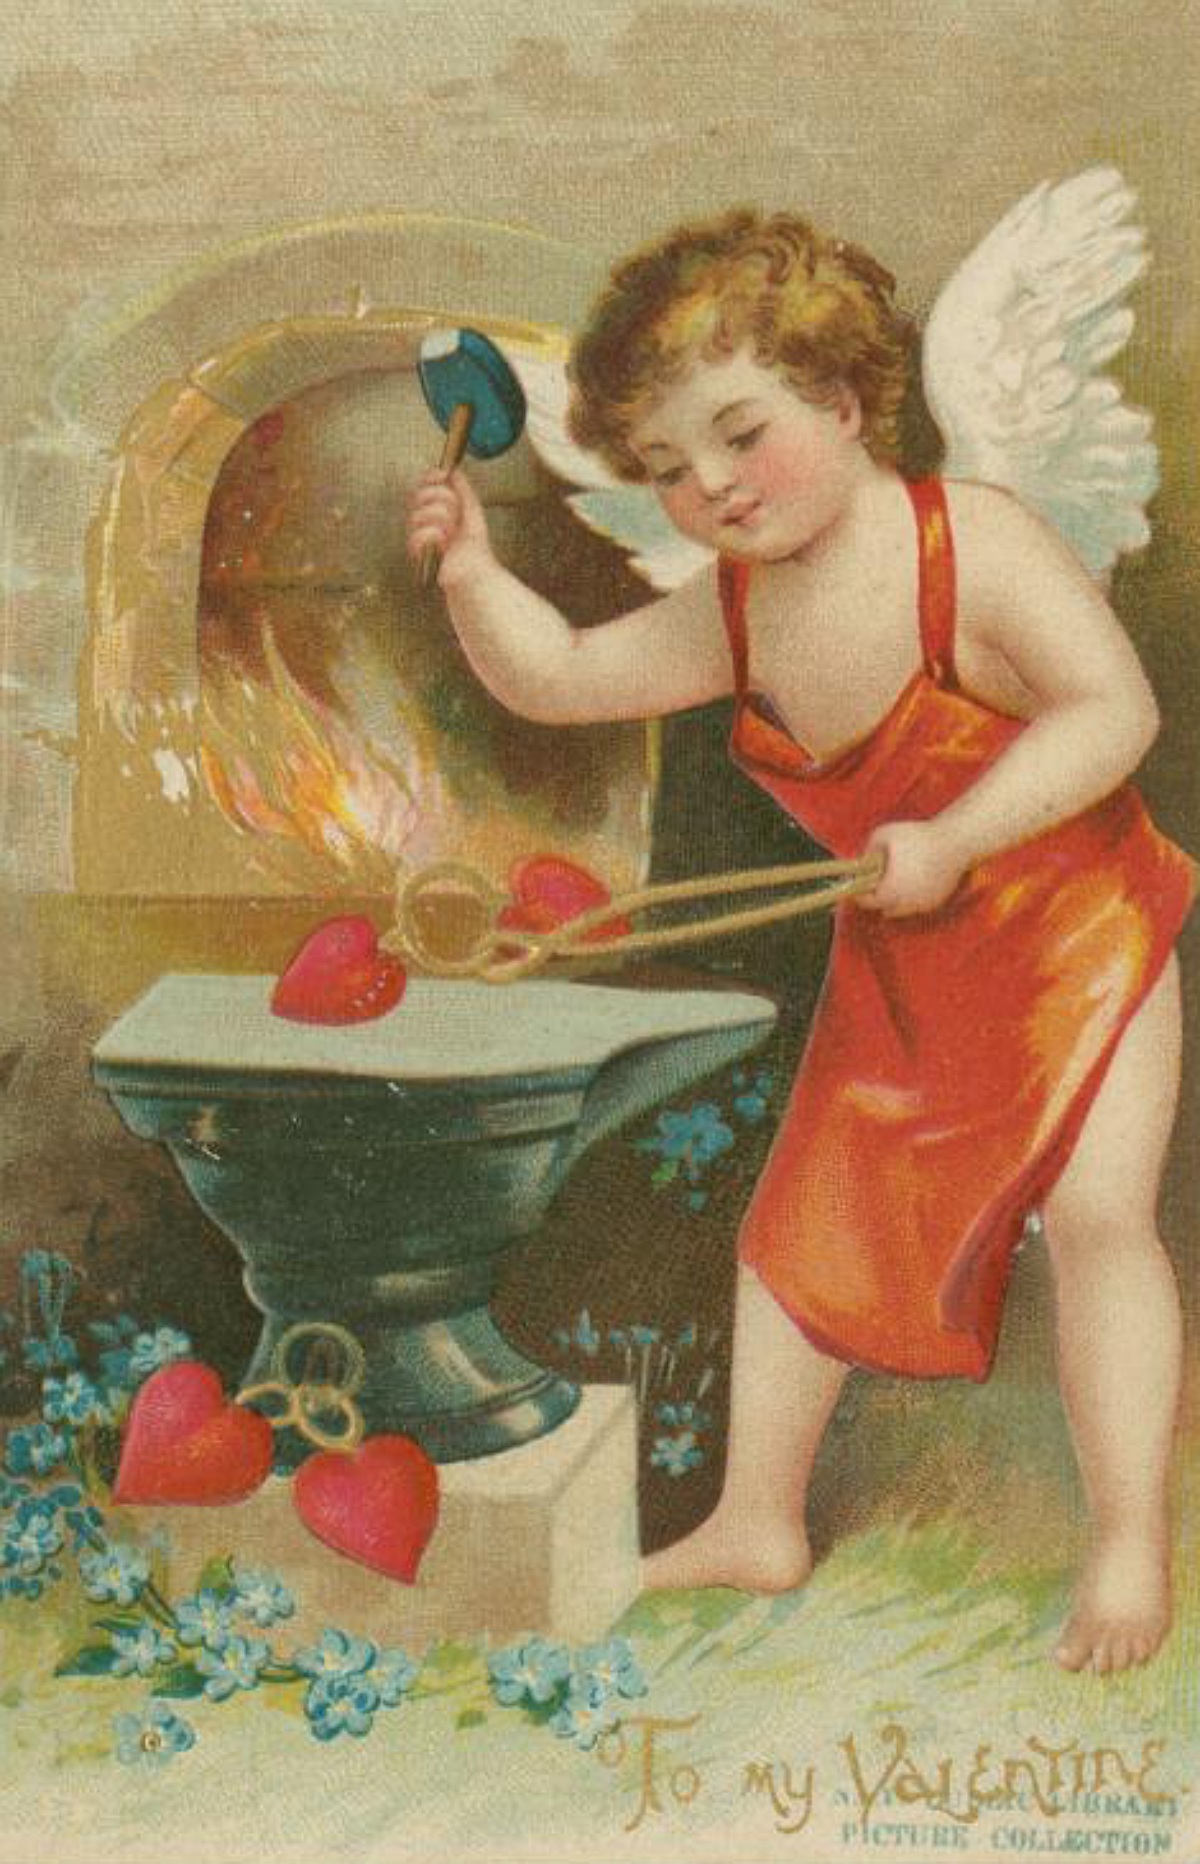 1890s Valentine's Day card